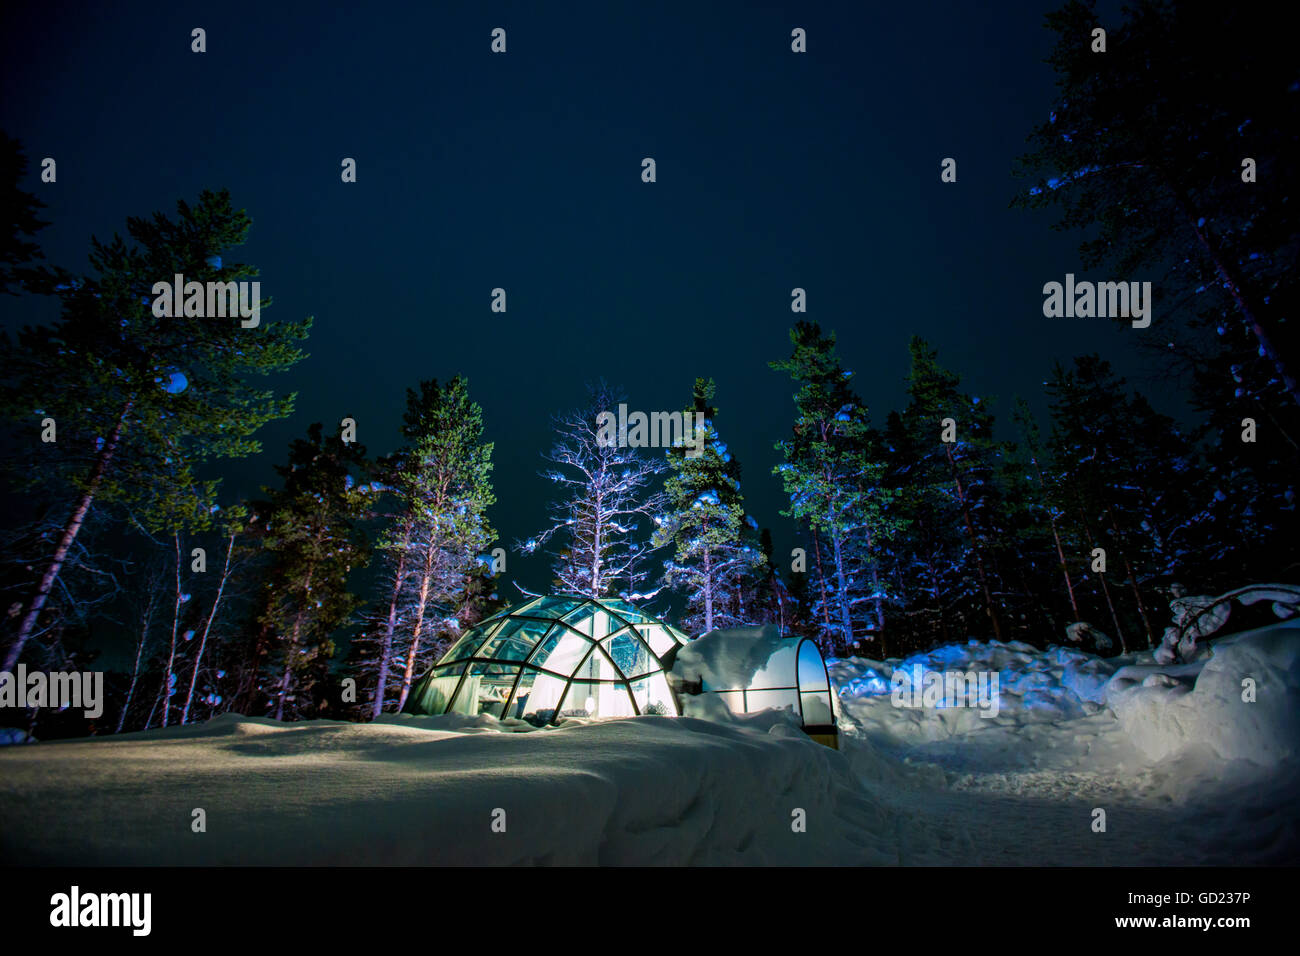 Kakslauttanen Igloo Village at night, Saariselka, Finland, Scandinavia, Europe Stock Photo